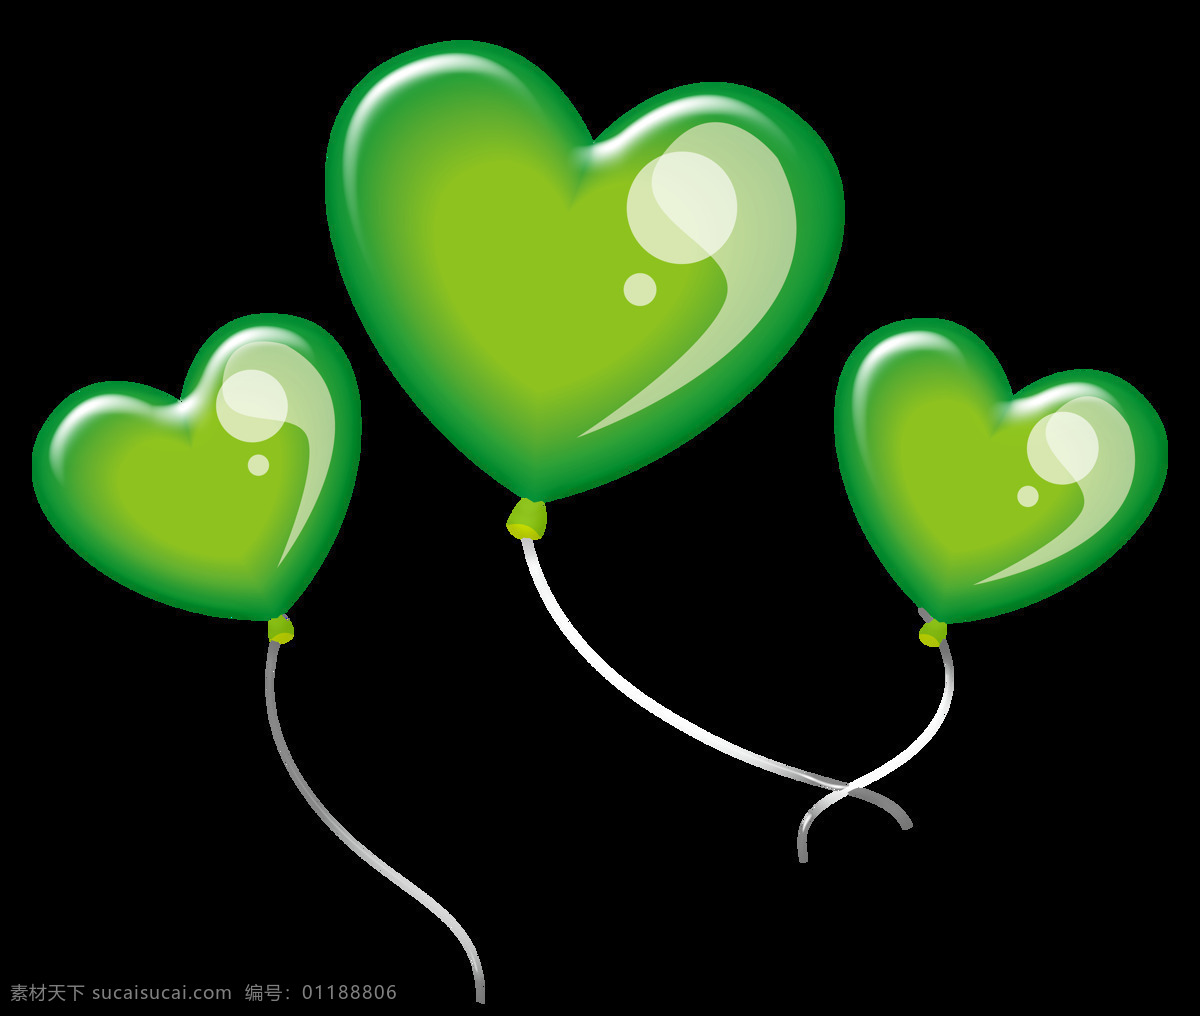 绿色气球 气球 绿色 庆典 心的形状 周年 生日 庆祝 节日 欢呼 卡通设计